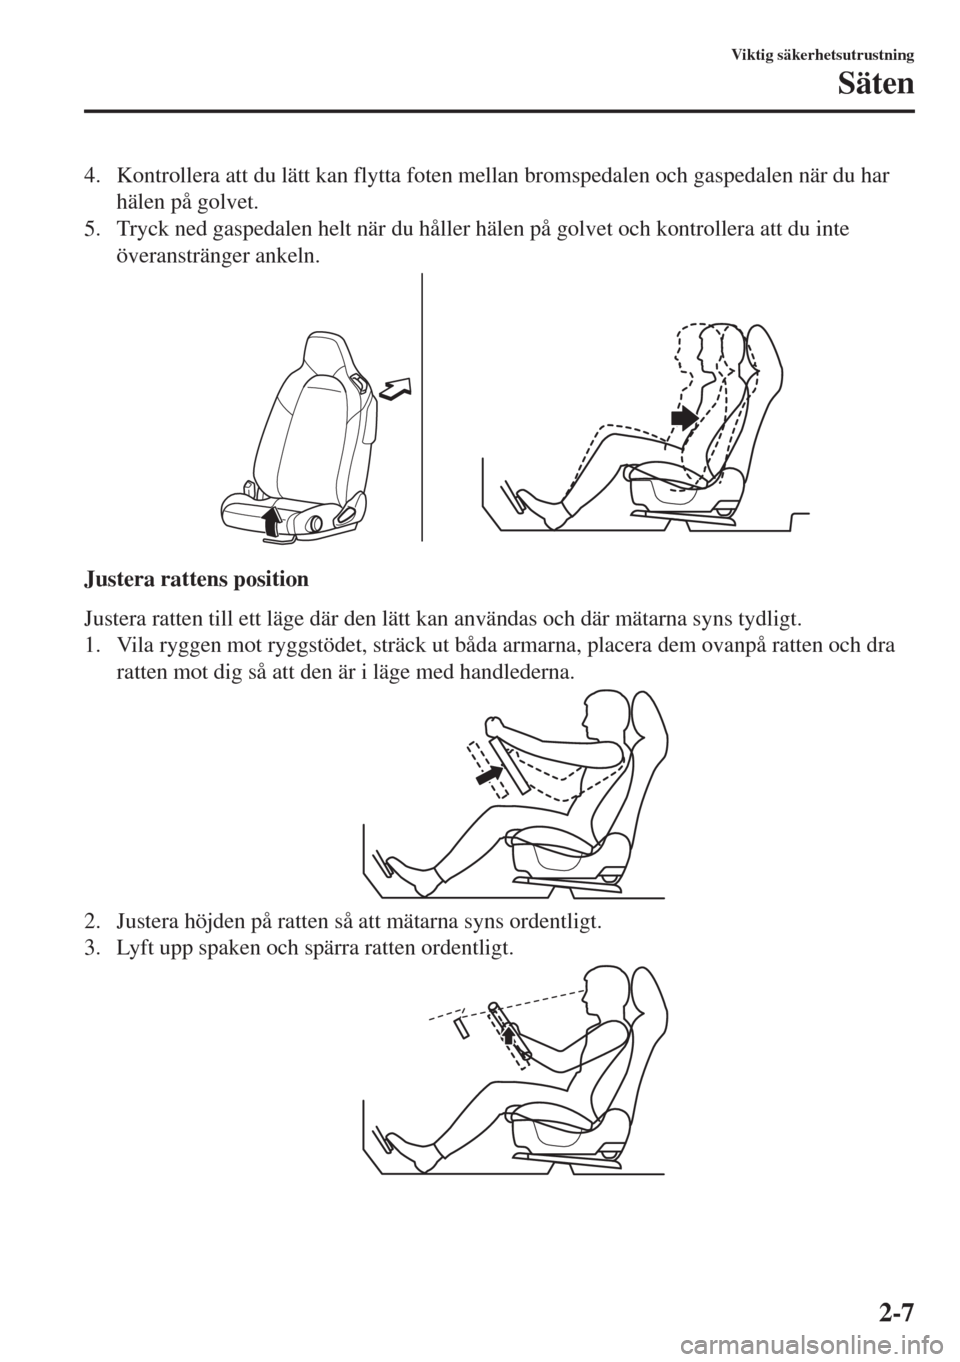 MAZDA MODEL MX-5 2018  Ägarmanual (in Swedish) 4. Kontrollera att du lätt kan flytta foten mellan bromspedalen och gaspedalen när du har
hälen på golvet.
5. Tryck ned gaspedalen helt när du håller hälen på golvet och kontrollera att du int